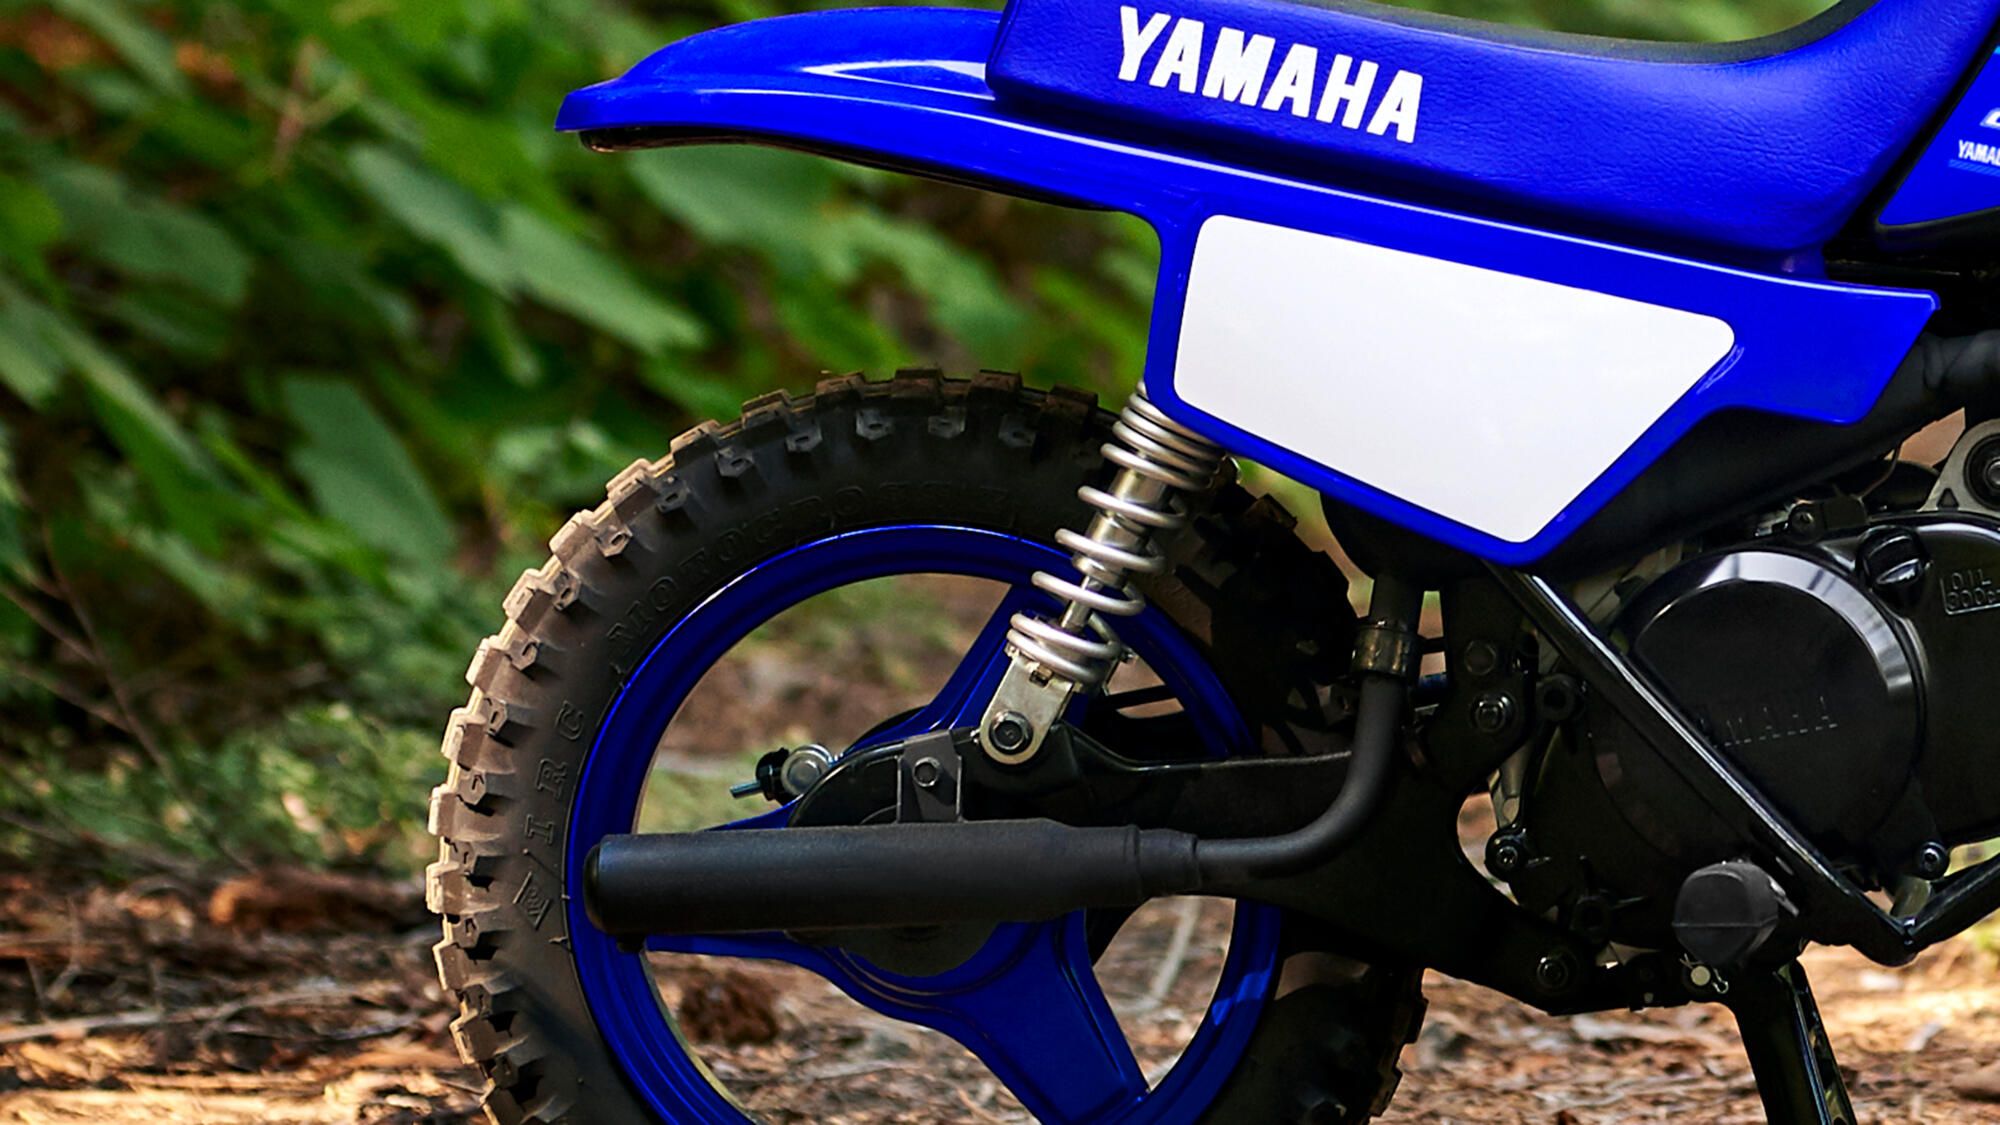 Yamaha Piwi 50 2021 echappement et protection thermique